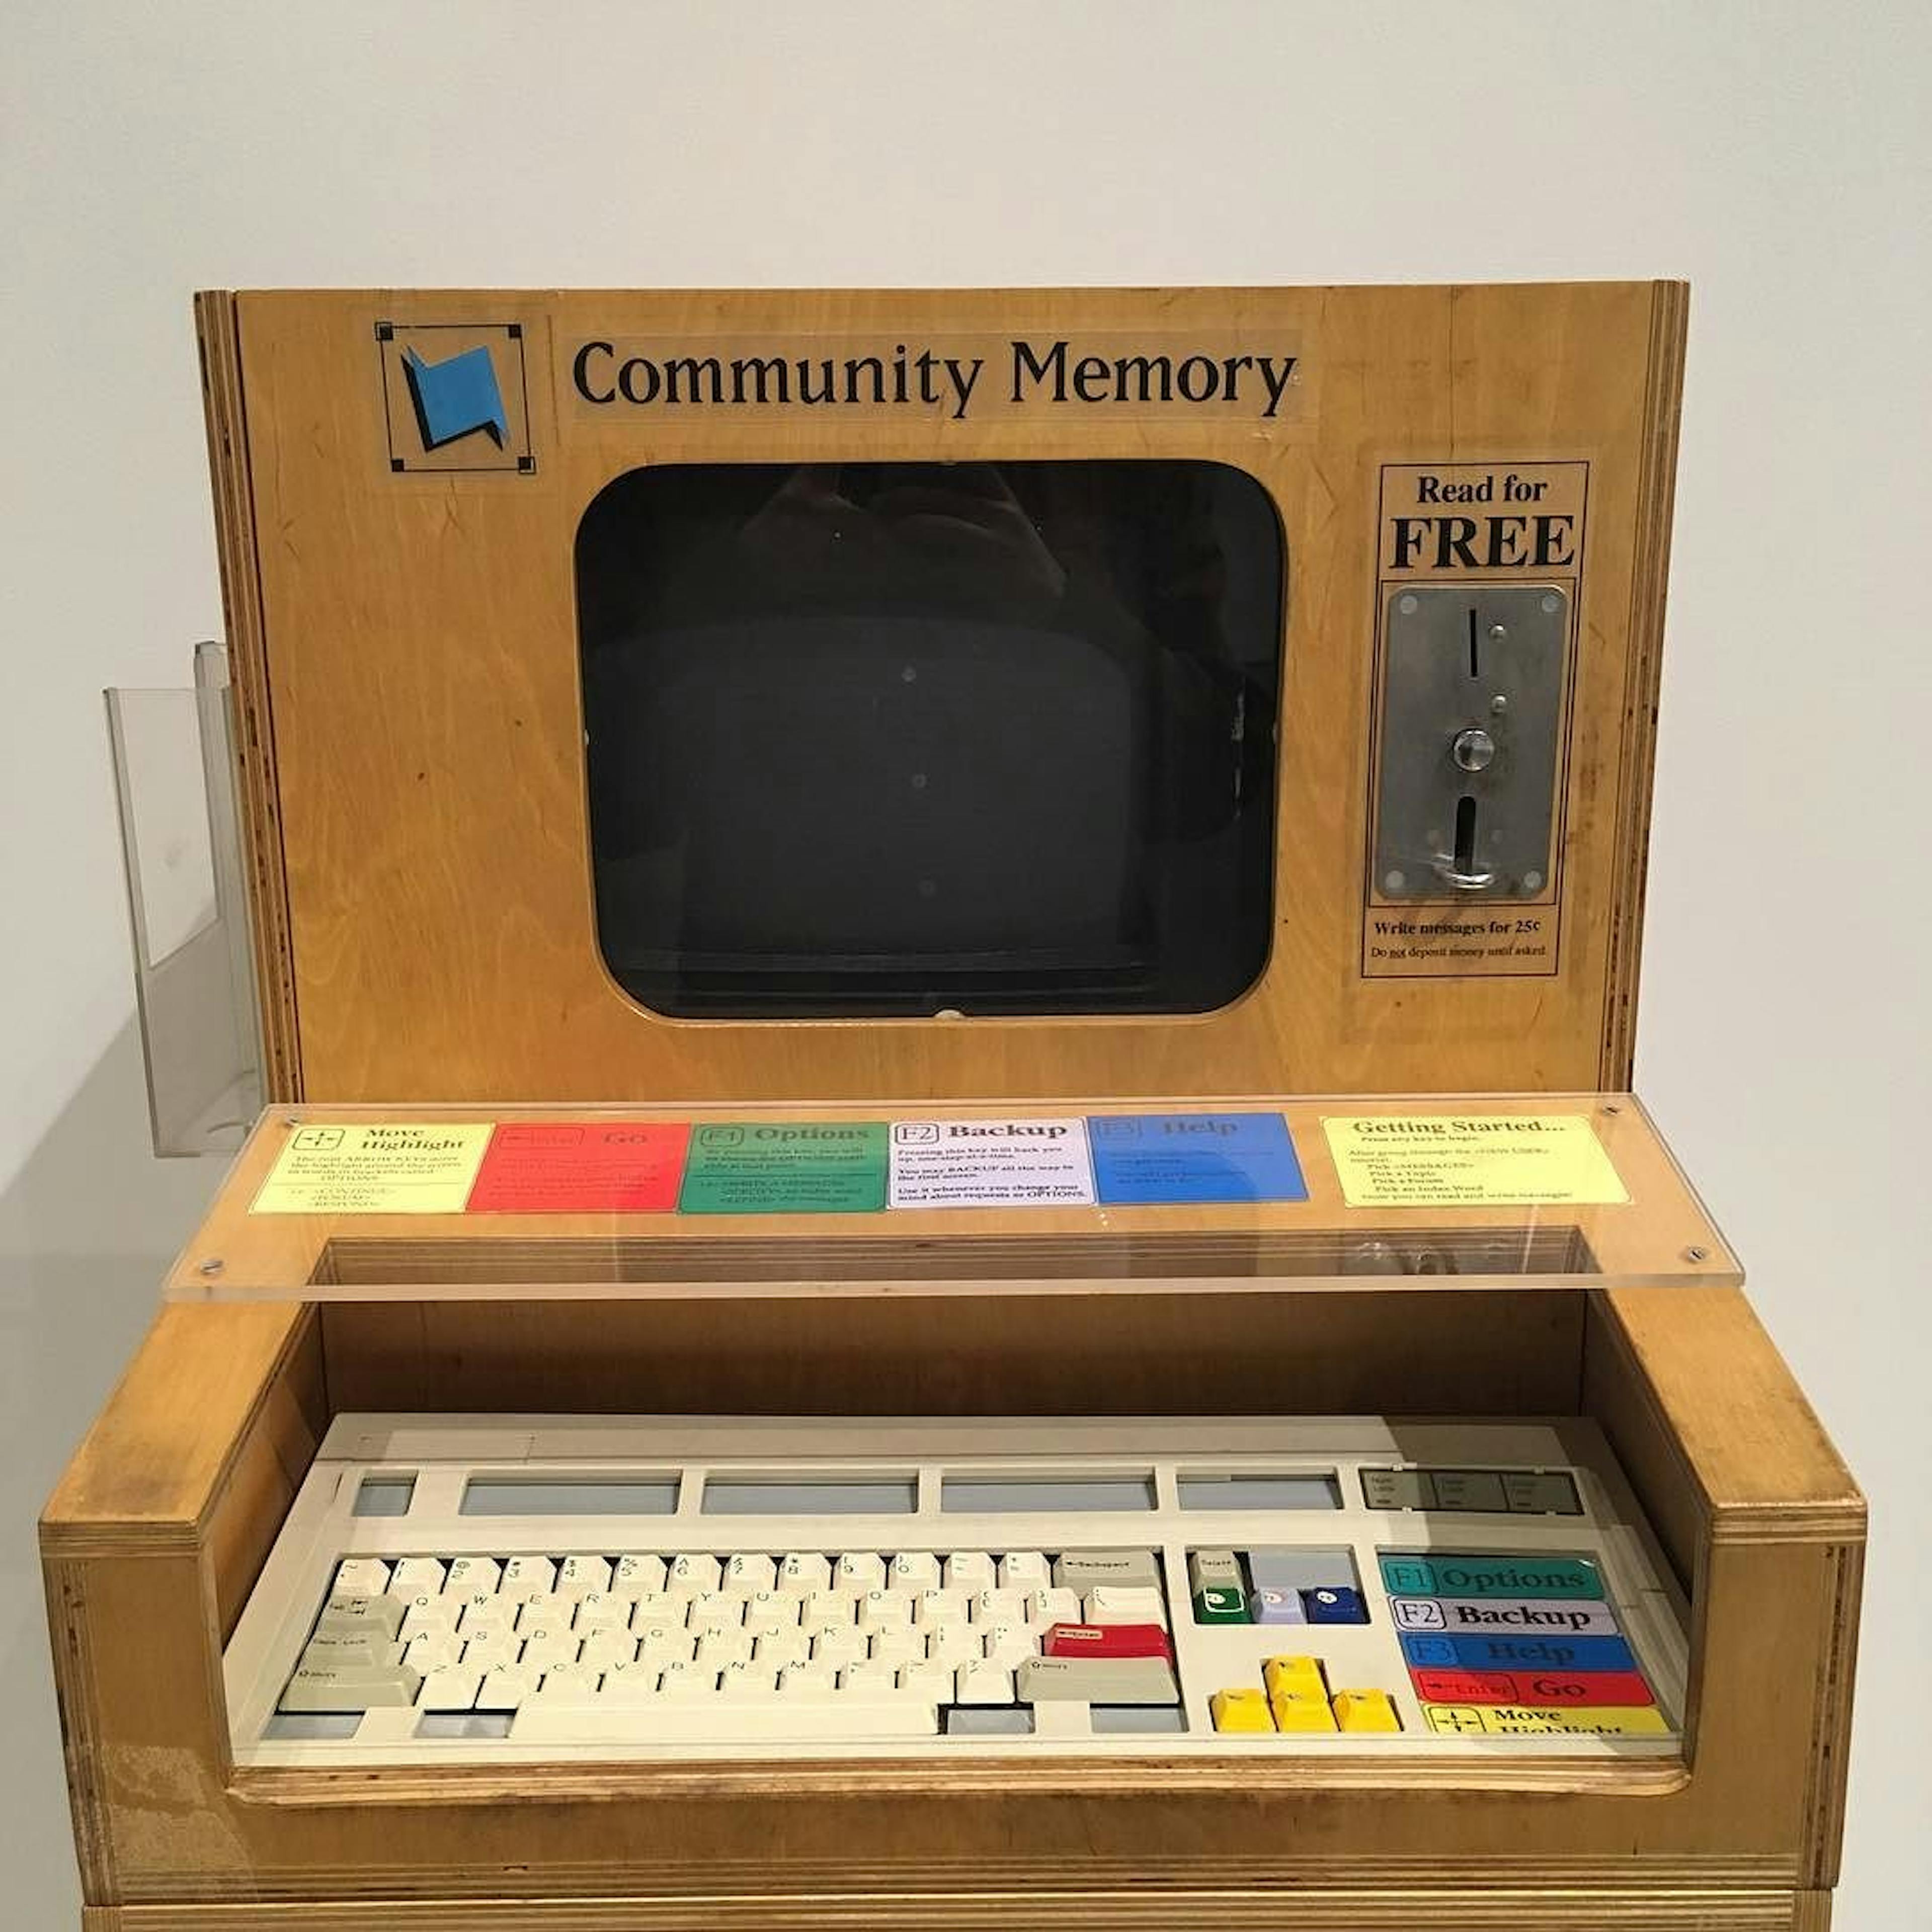 Terminal de Memória Comunitária no Computer History Museum (Califórnia). Imagem de Evan P. Cordes / Wikimedia